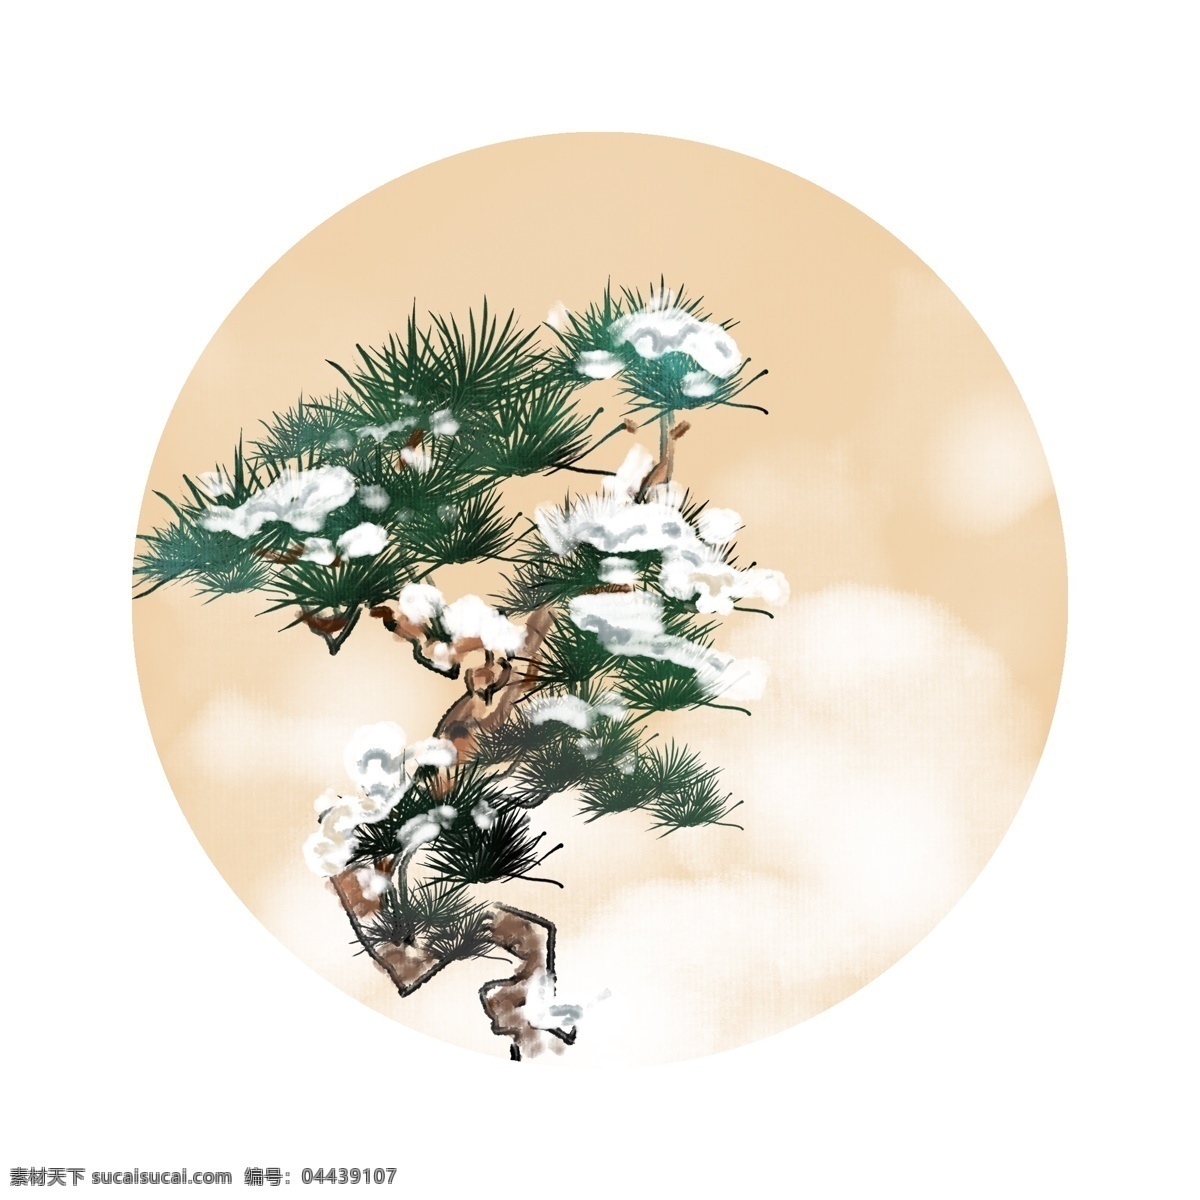 冬季 迎客松 圆形 边框 绿色的松树 圆形的边框 卡通边框 手绘圆形边框 冬季圆形边框 落雪的松树